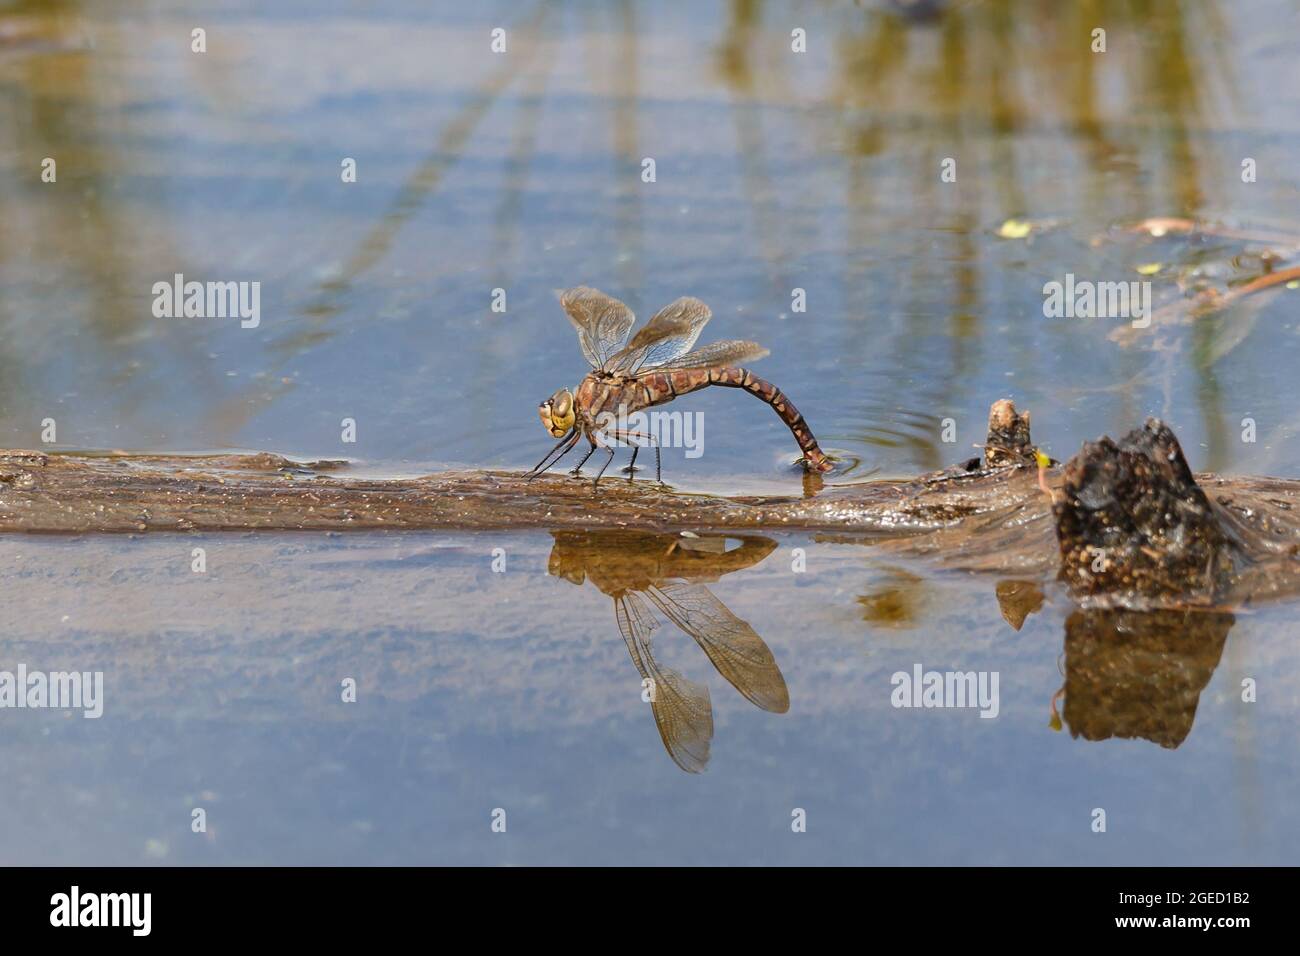 Eine Libelle sitzt auf einem alten Stamm und legt Eier in einen Teich. Nahaufnahme. Stockfoto